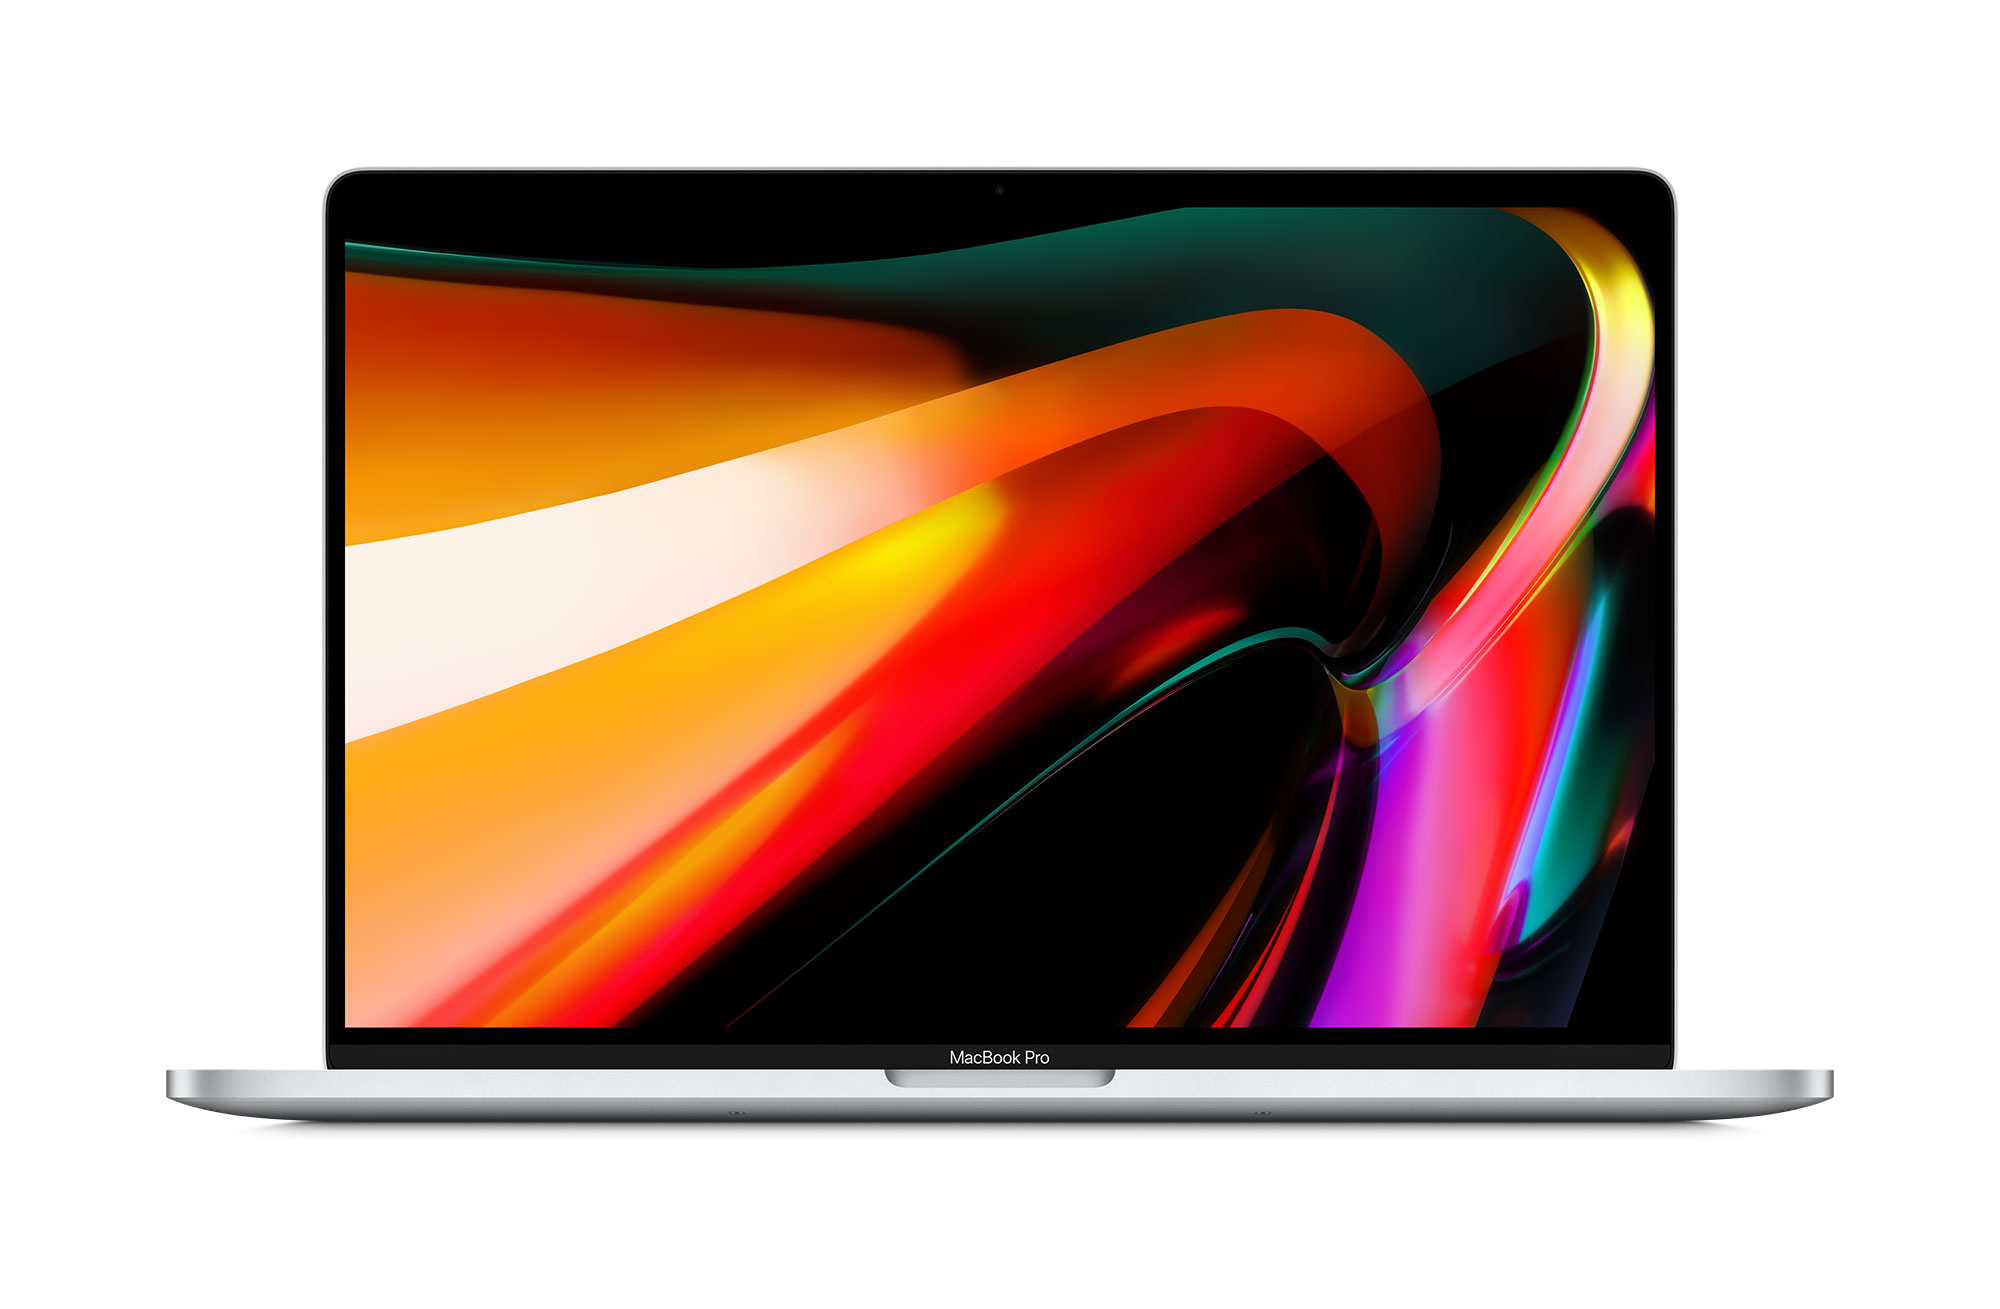 Apple MacBook Pro 40,6cm(16‘‘) 2,6GHz i7 TouchBar 512GB Silber (MVVL2D/A)